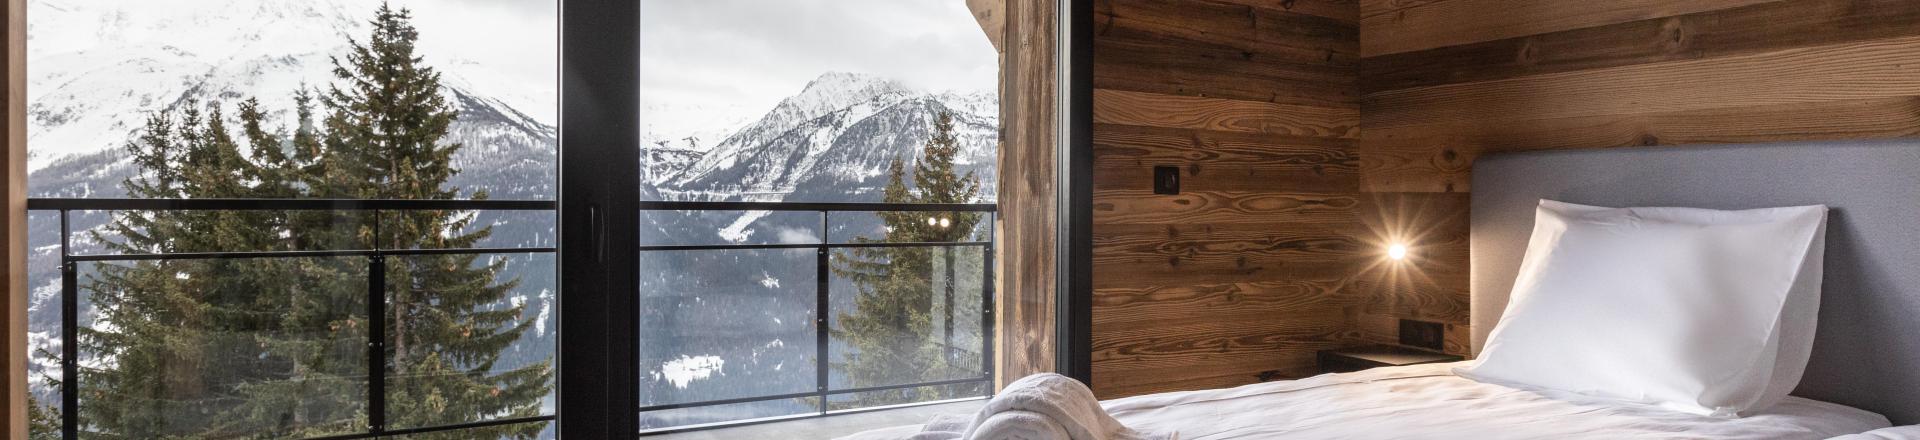 Rent in ski resort 6 room apartment cabin 14 people (5) - Résidence l'Orée du Bois - La Rosière - Bedroom